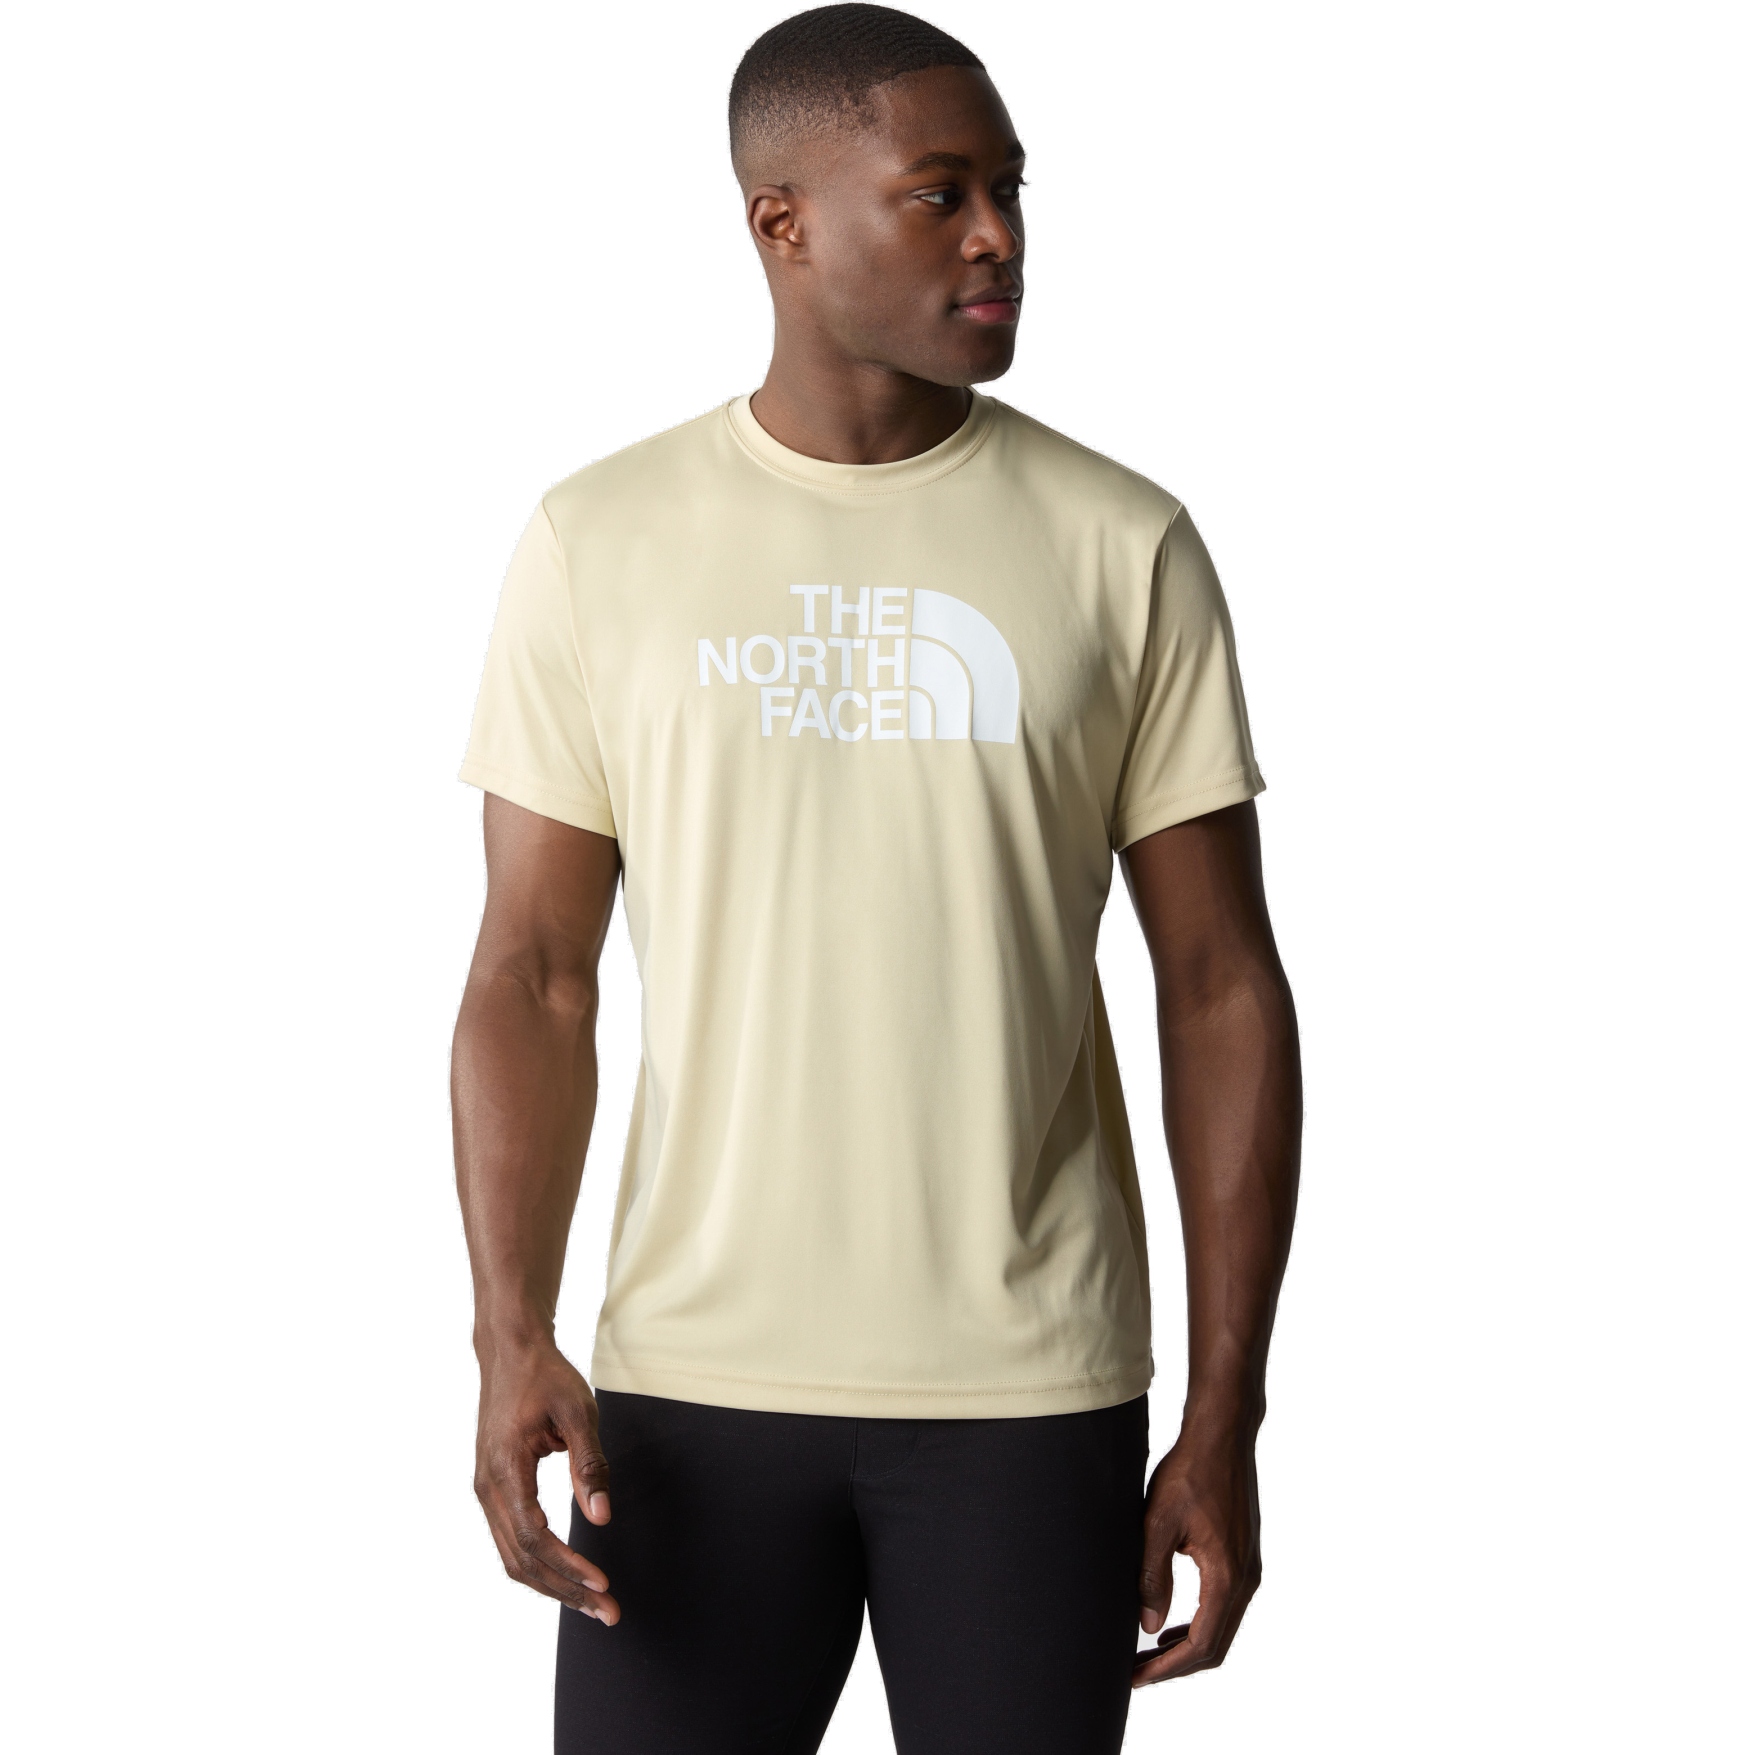 Produktbild von The North Face Reaxion Easy T-Shirt Herren - Gravel